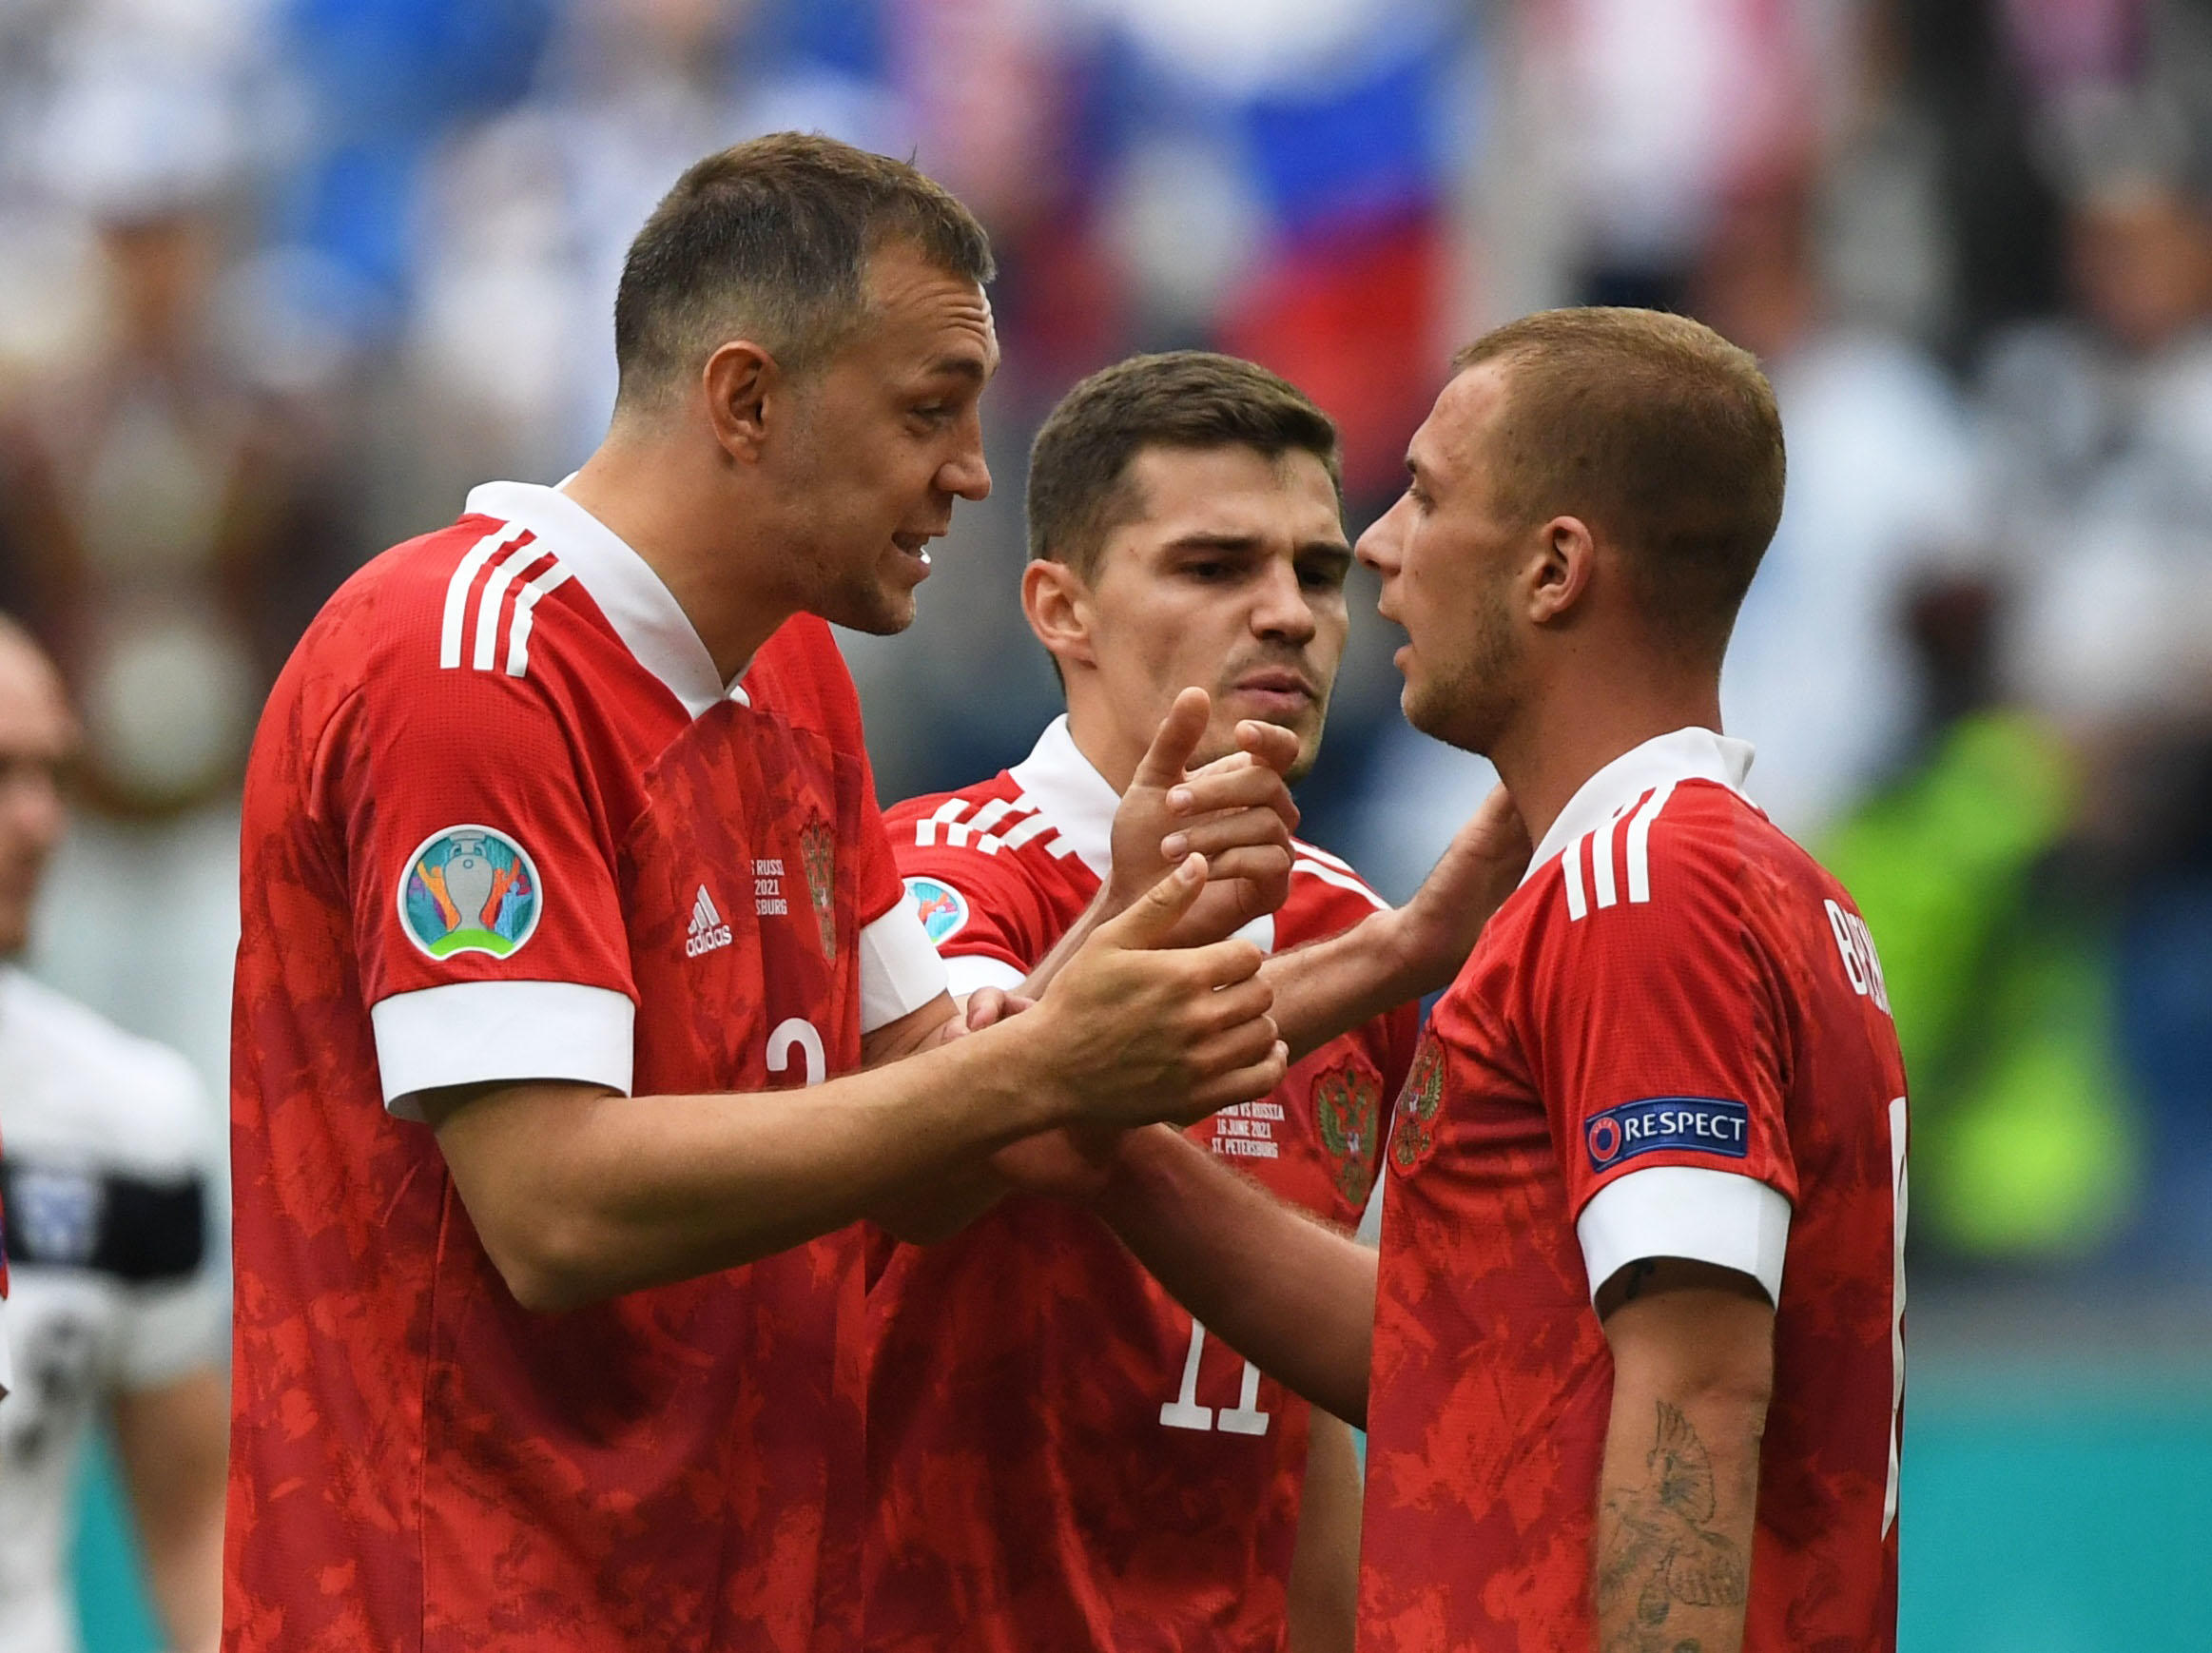 La Coupe du monde est arrivée en Russie